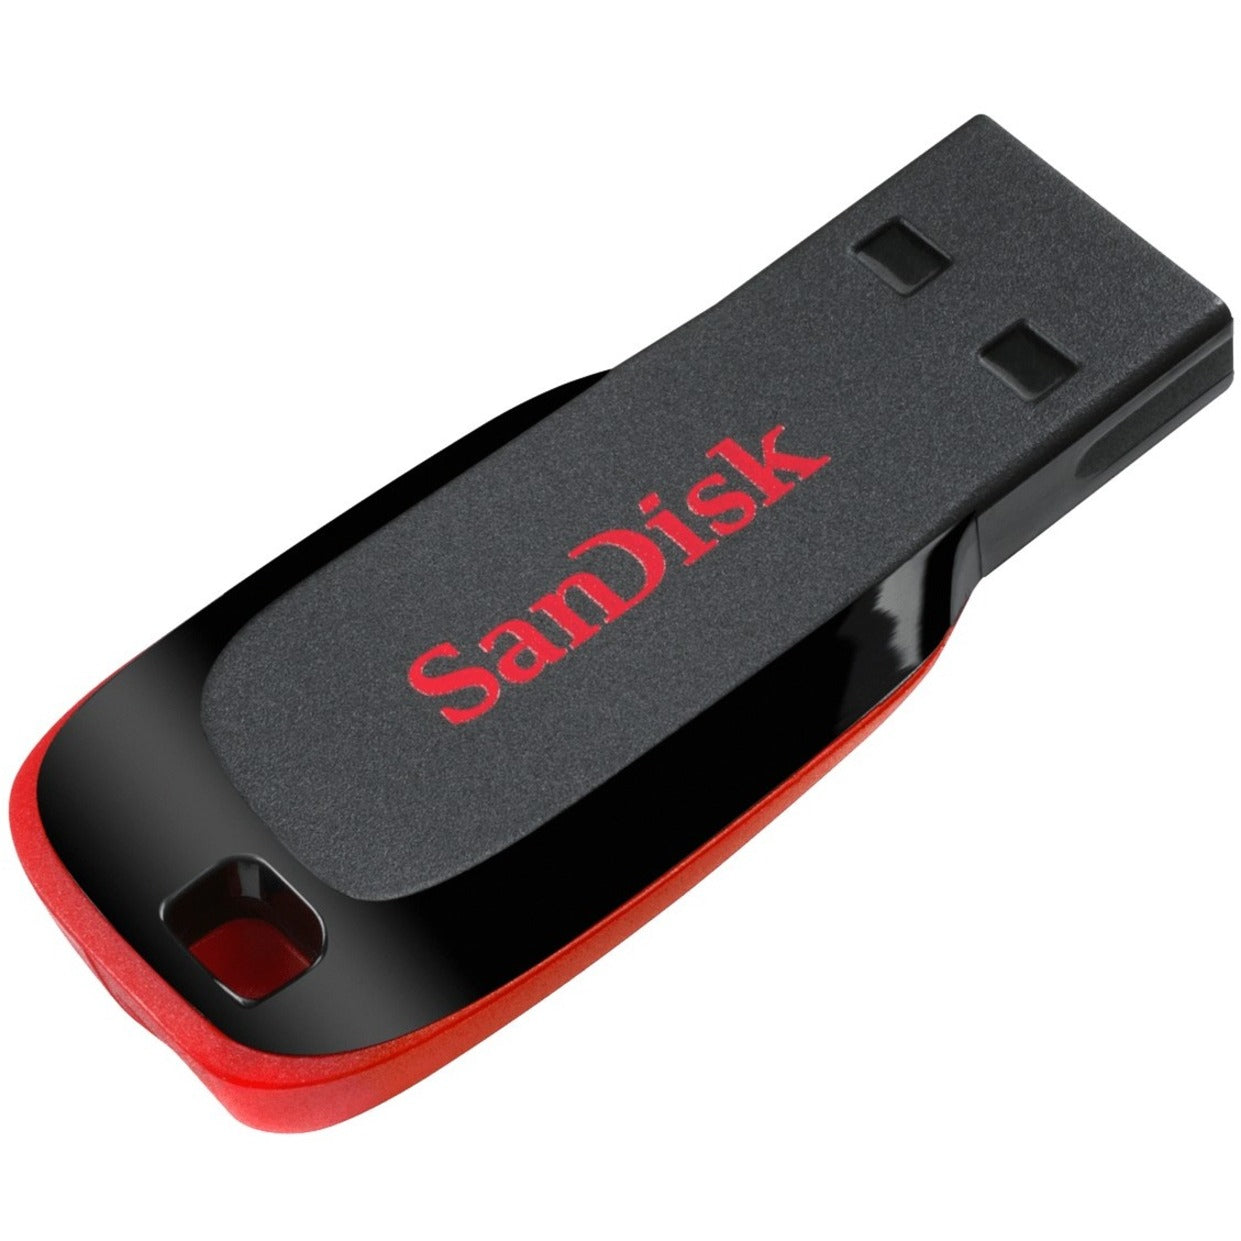 SanDisk SDCZ50-064G-A46 Cruzer Blade USB Flash Drive 64GB, High-Speed Data Storage Solution